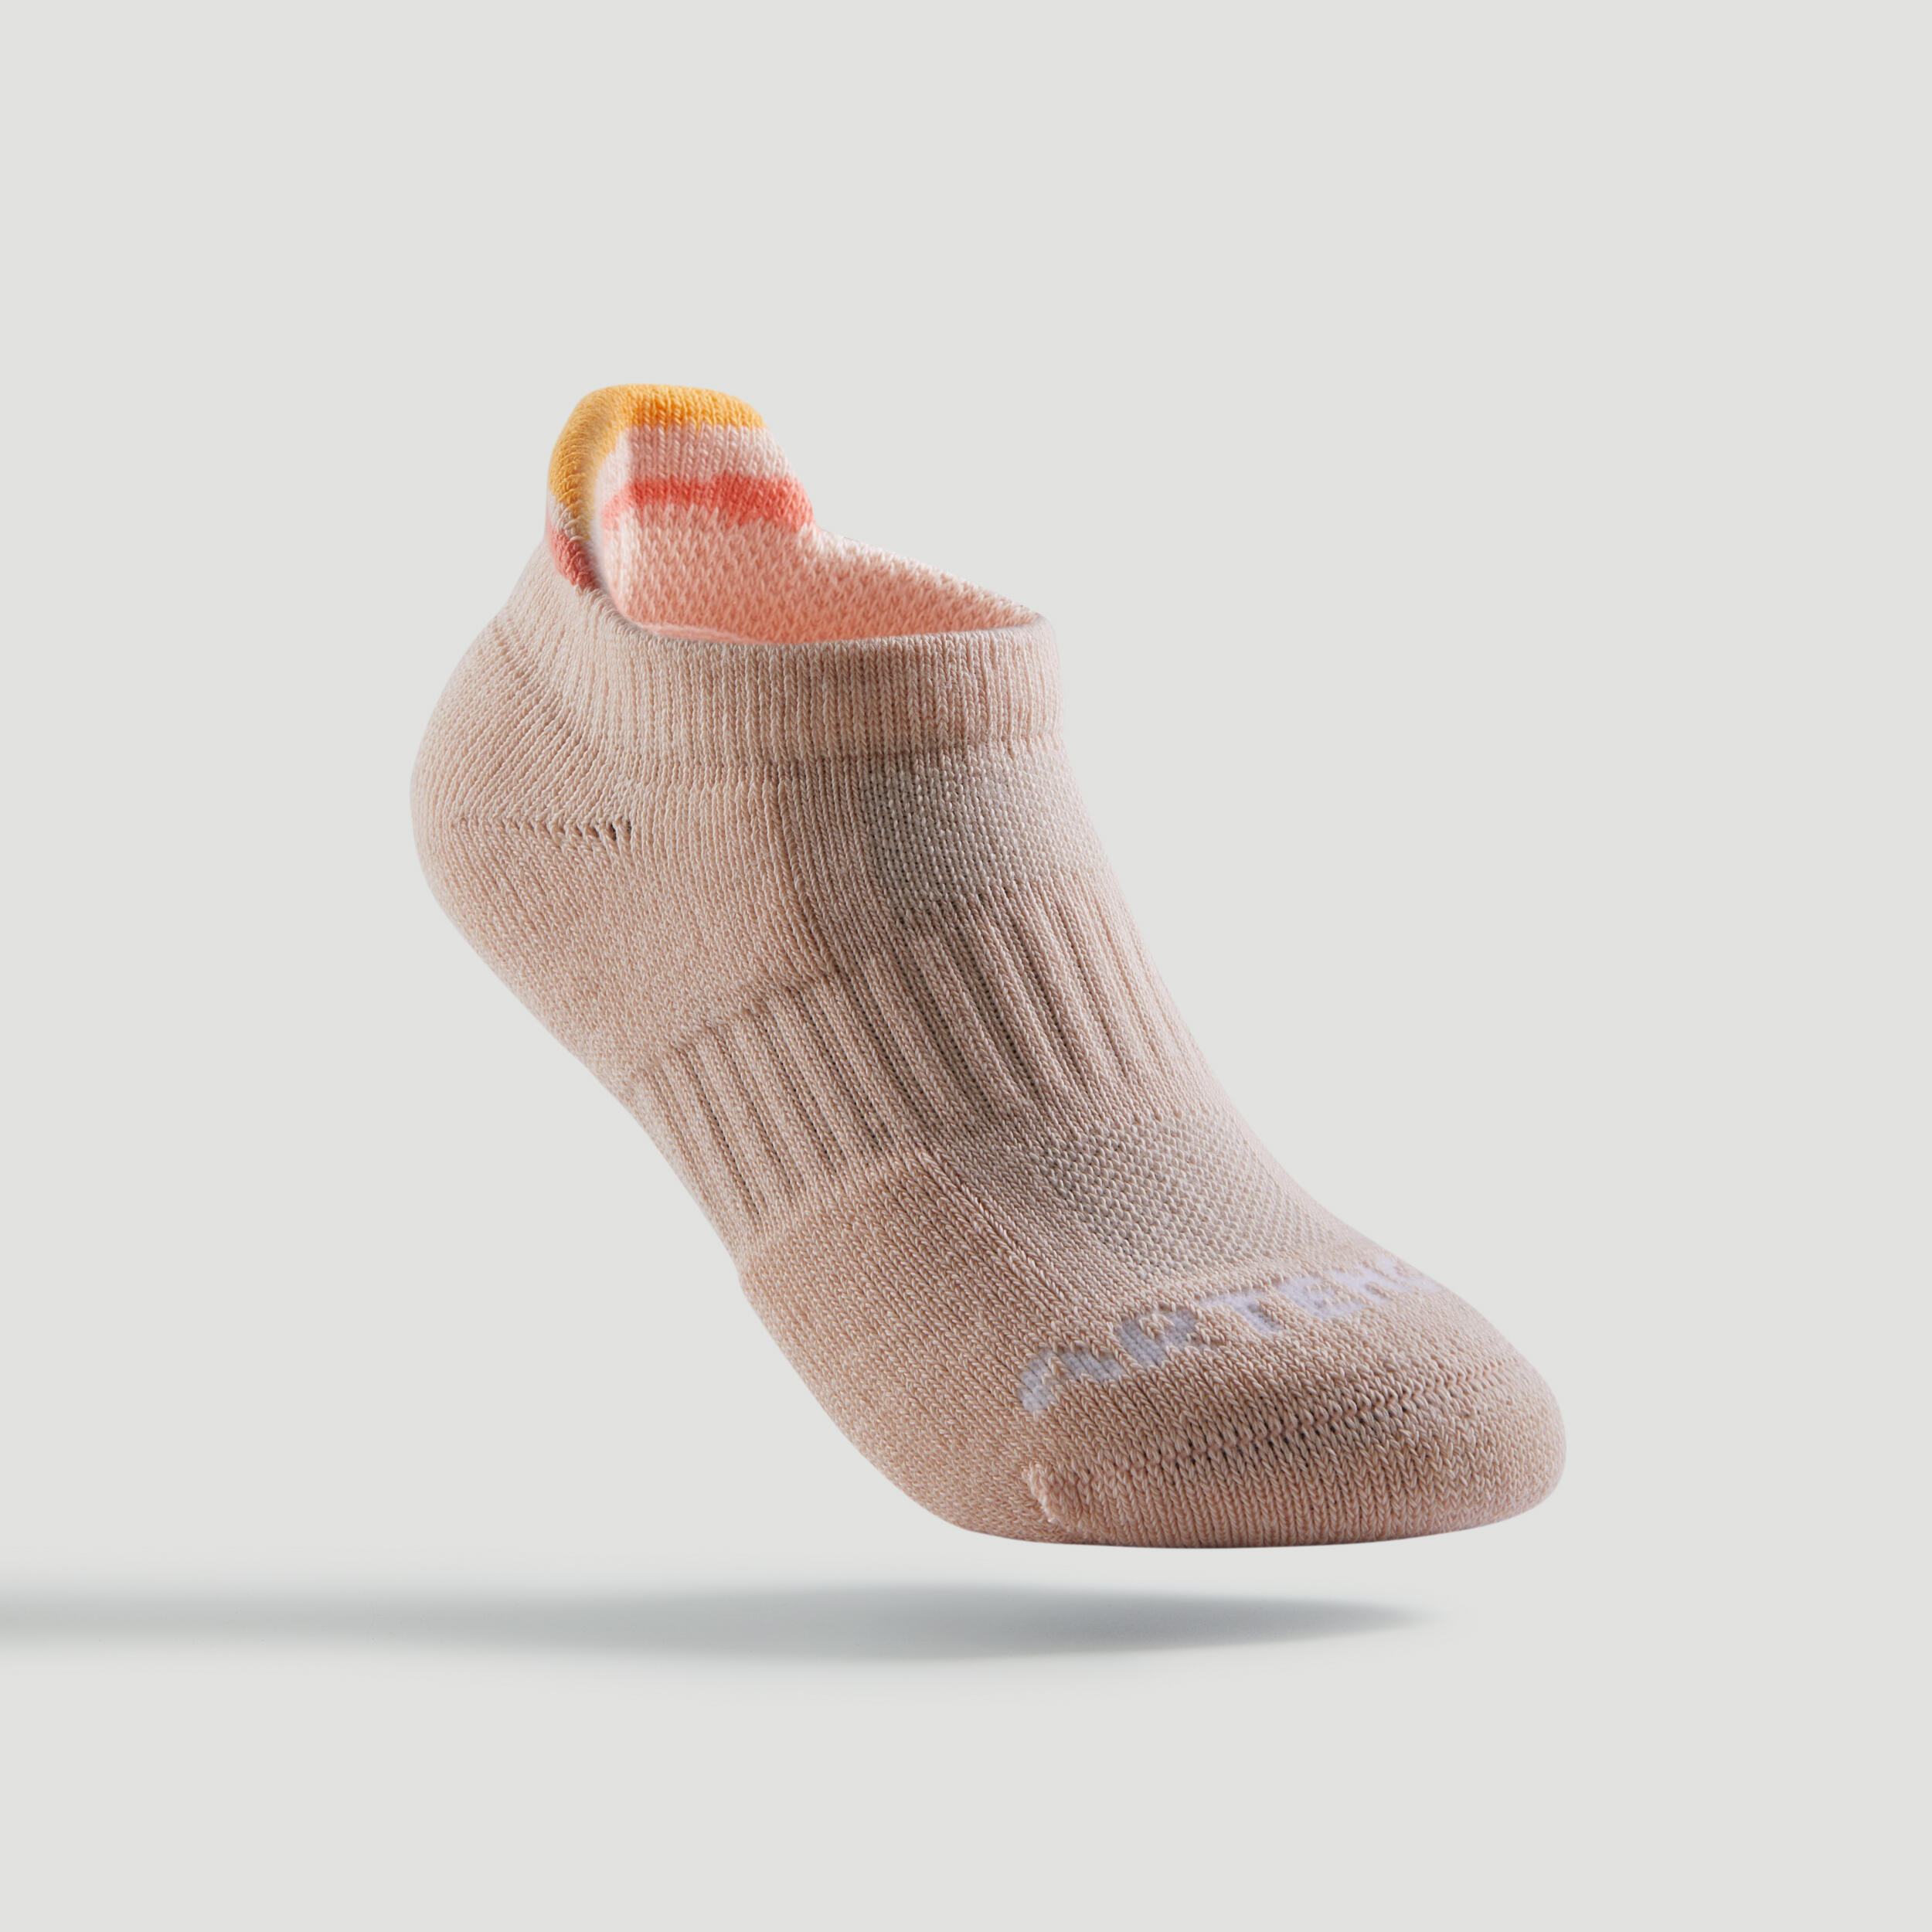 Kids' Low-Cut Sports Socks Tri-Pack - Beige/White/Pink 2/8